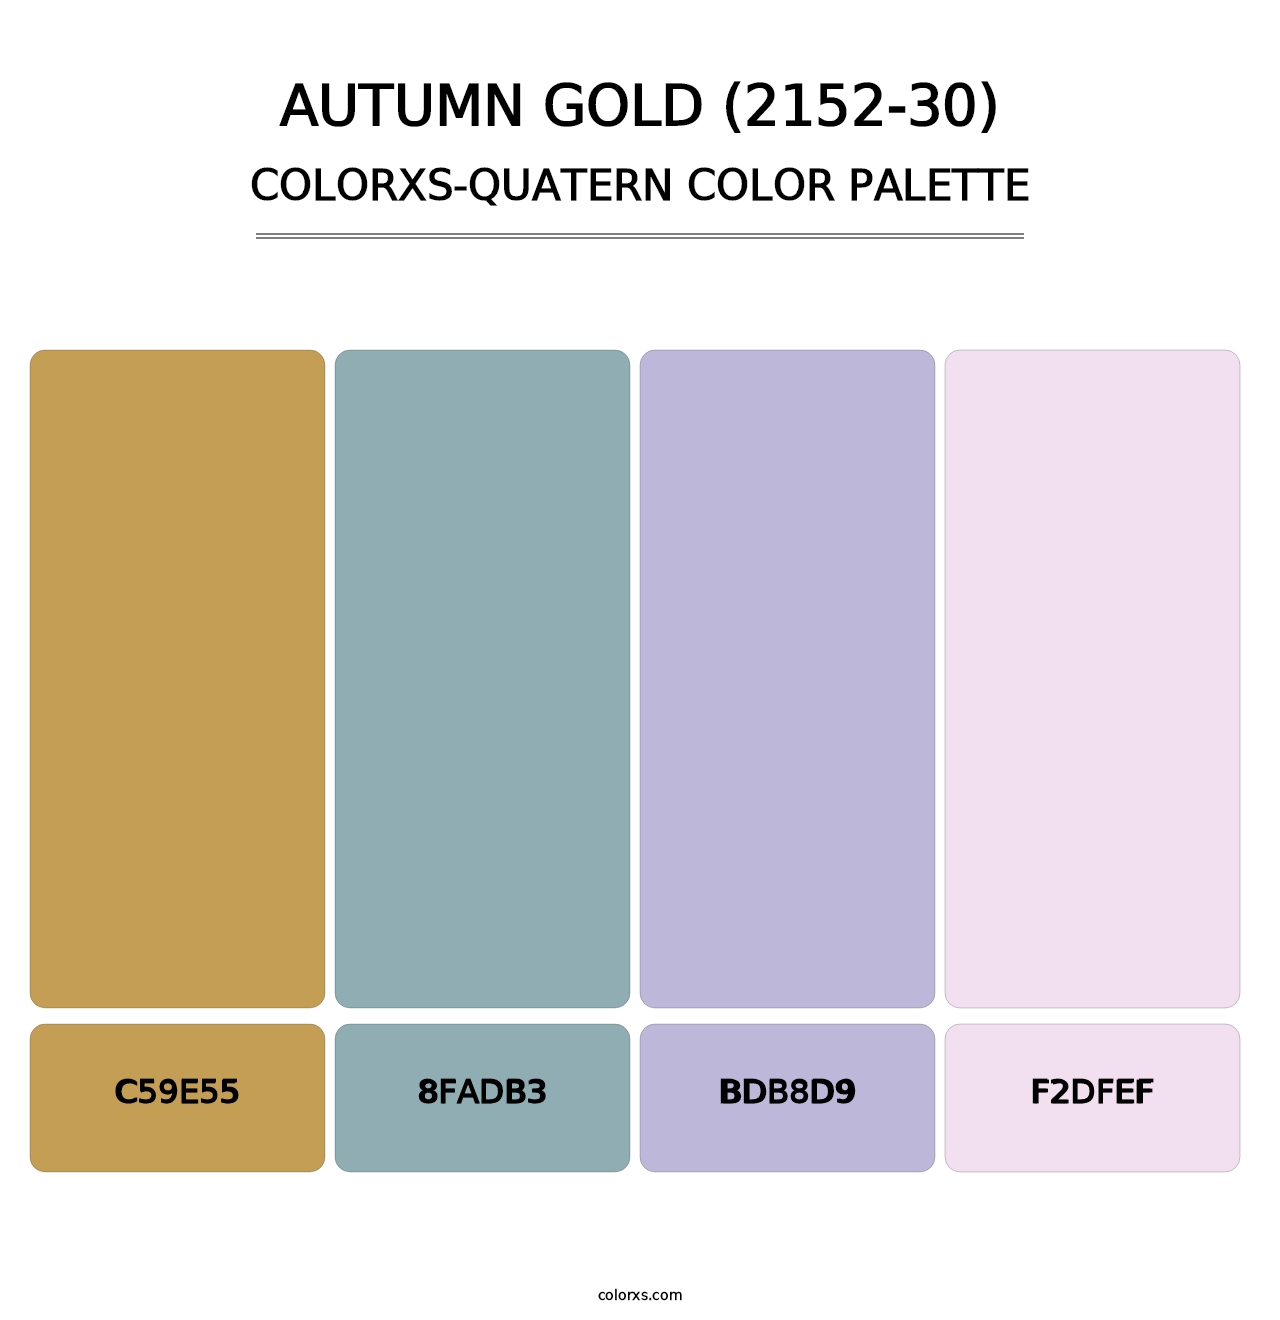 Autumn Gold (2152-30) - Colorxs Quatern Palette